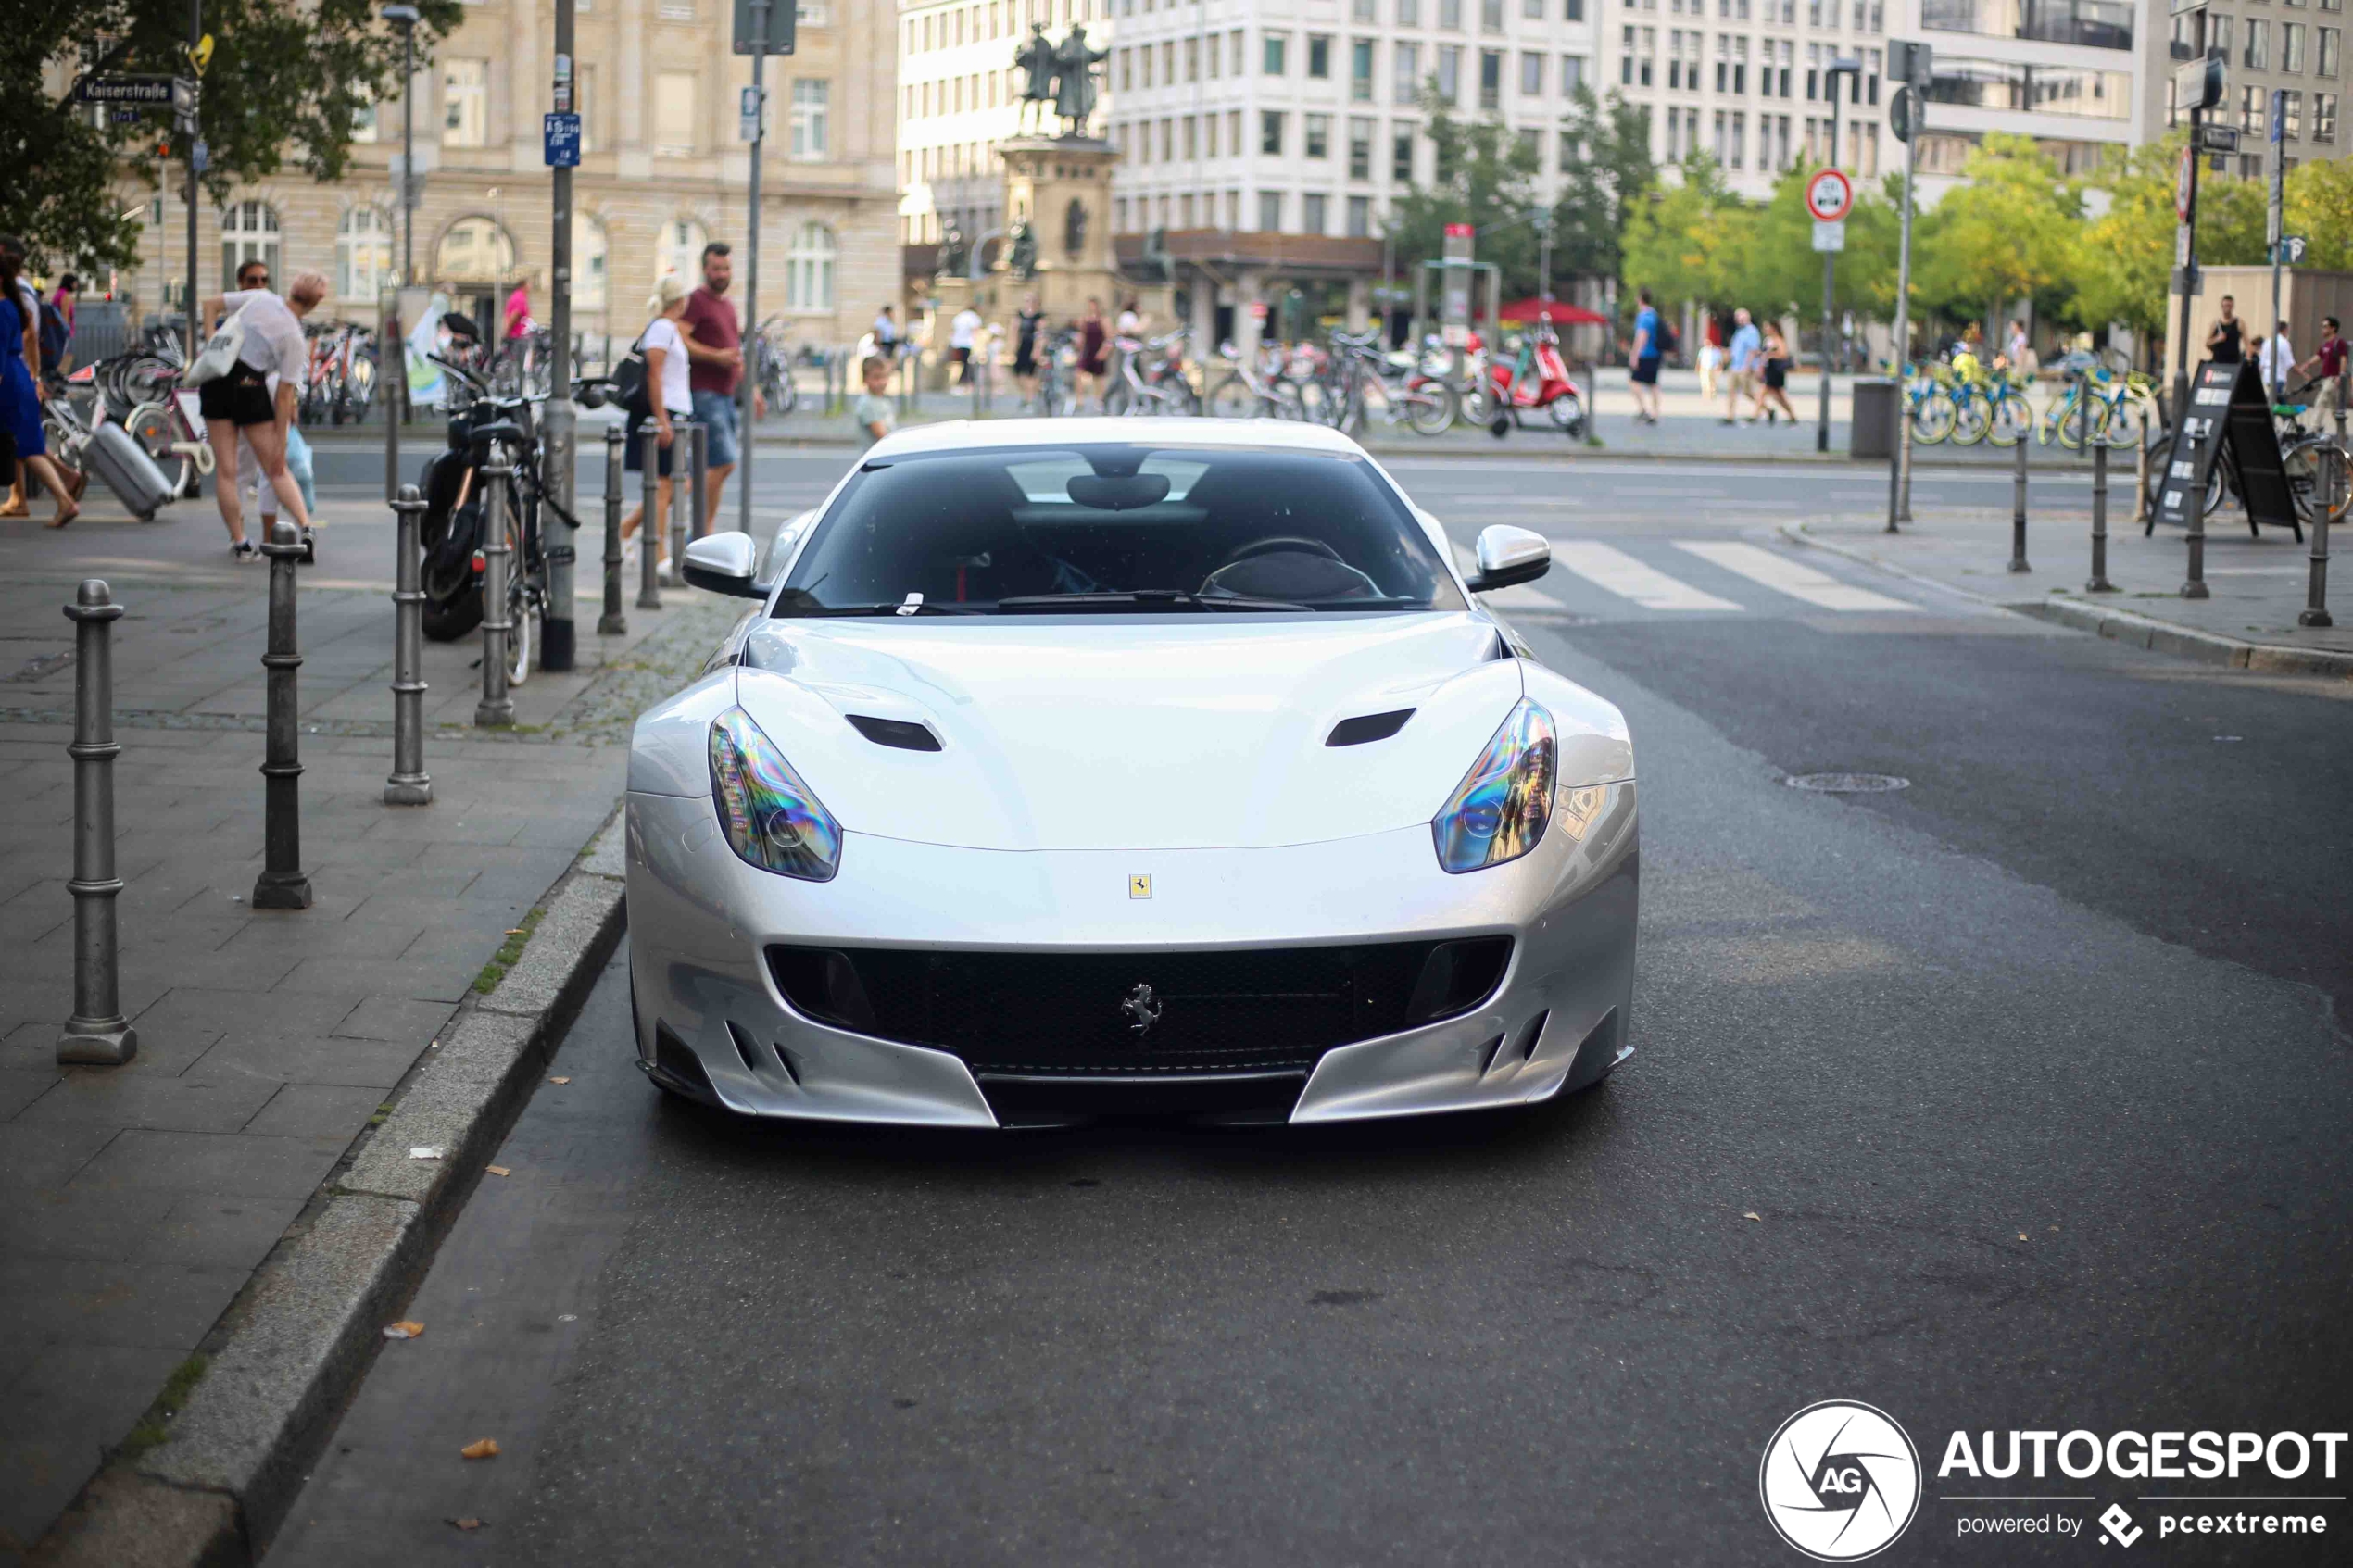 Zilvergrijze Ferrari F12tdf staat troosteloos op straat in Frankfurt